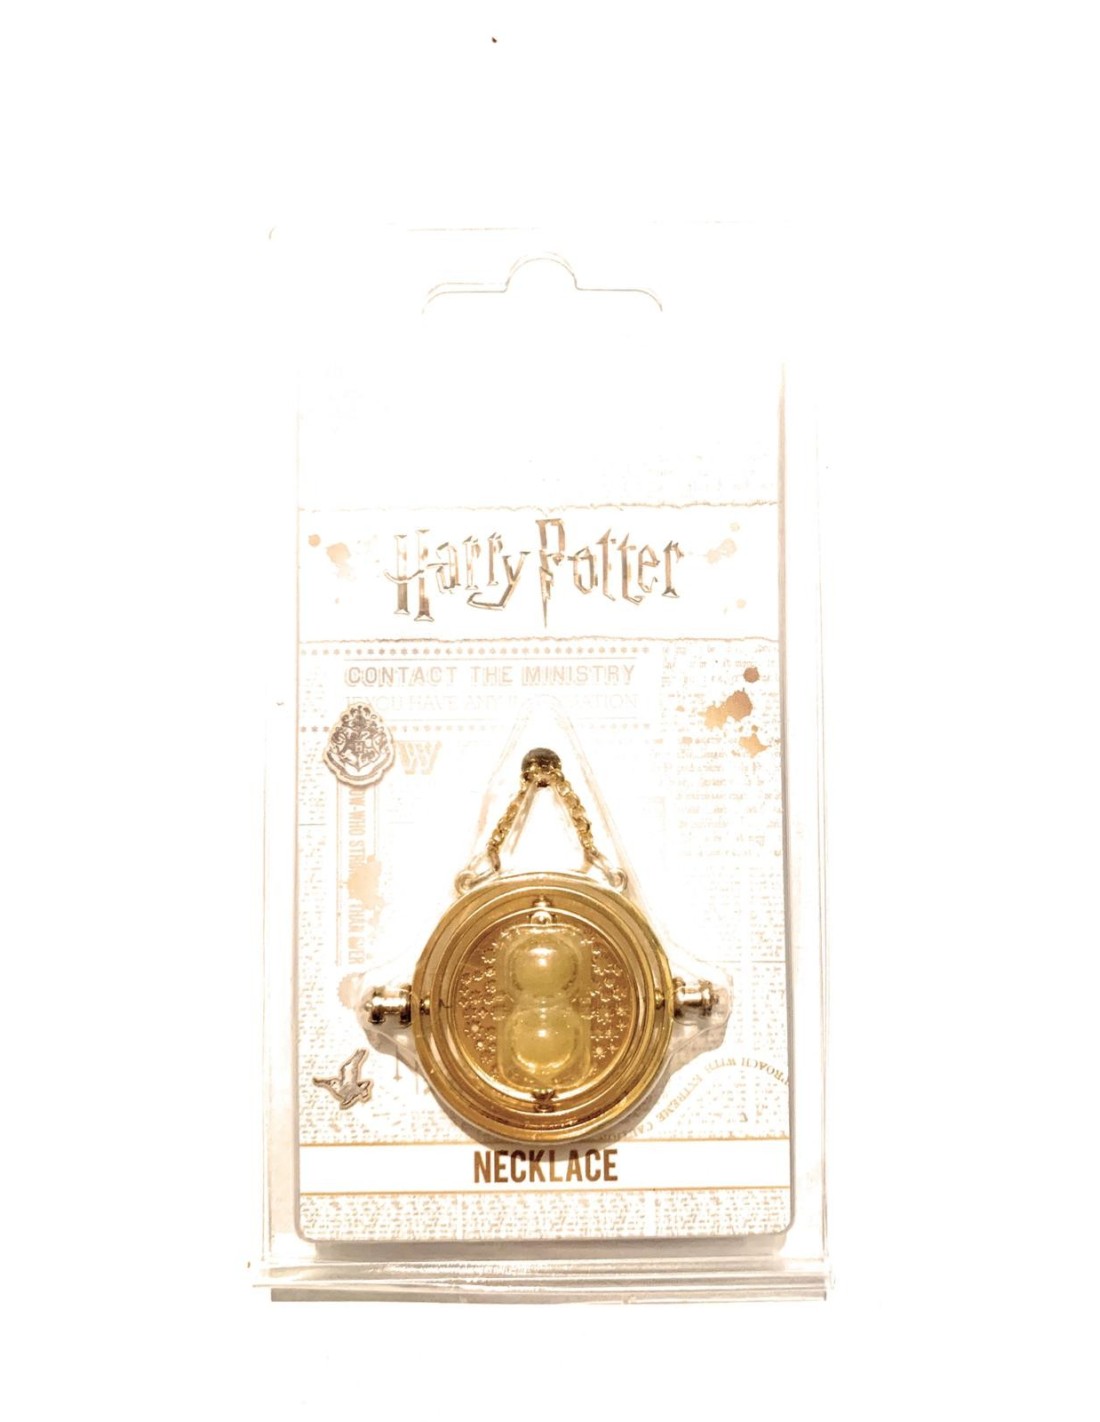 Collana Giratempo Harry Potter dorata in metallo con polvere